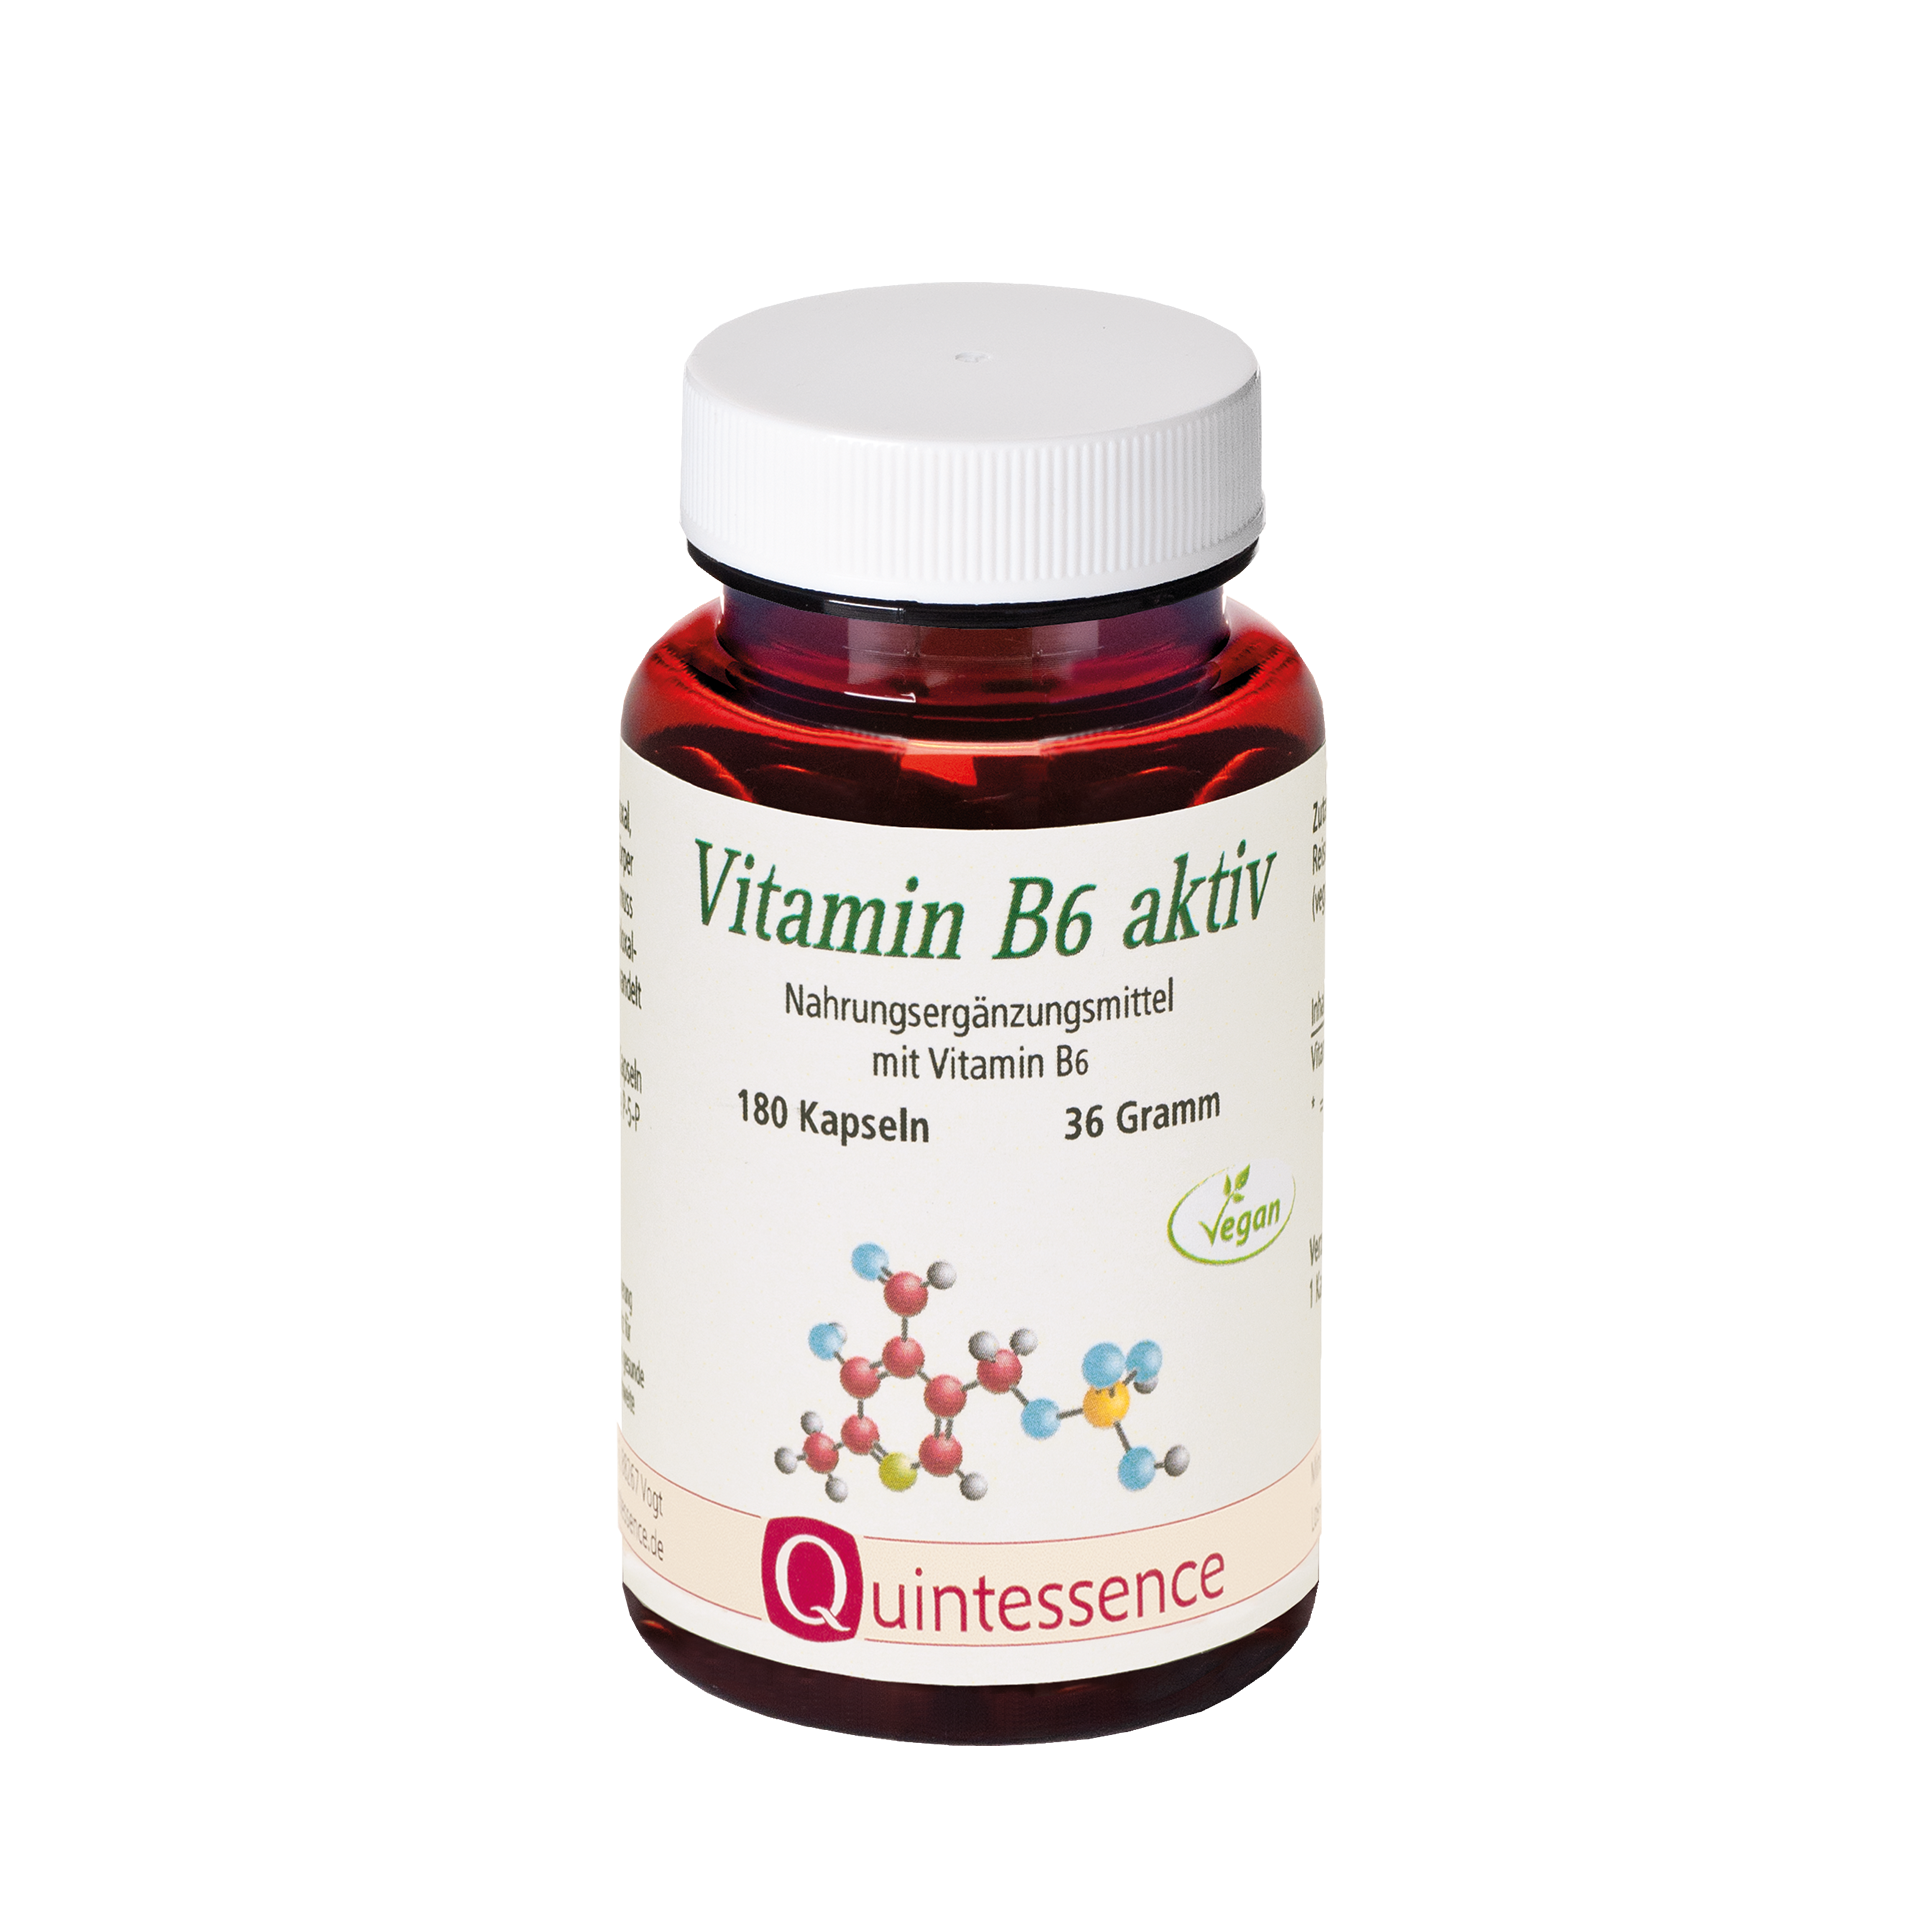 Vitamin B6 aktiv, 180 Kapseln